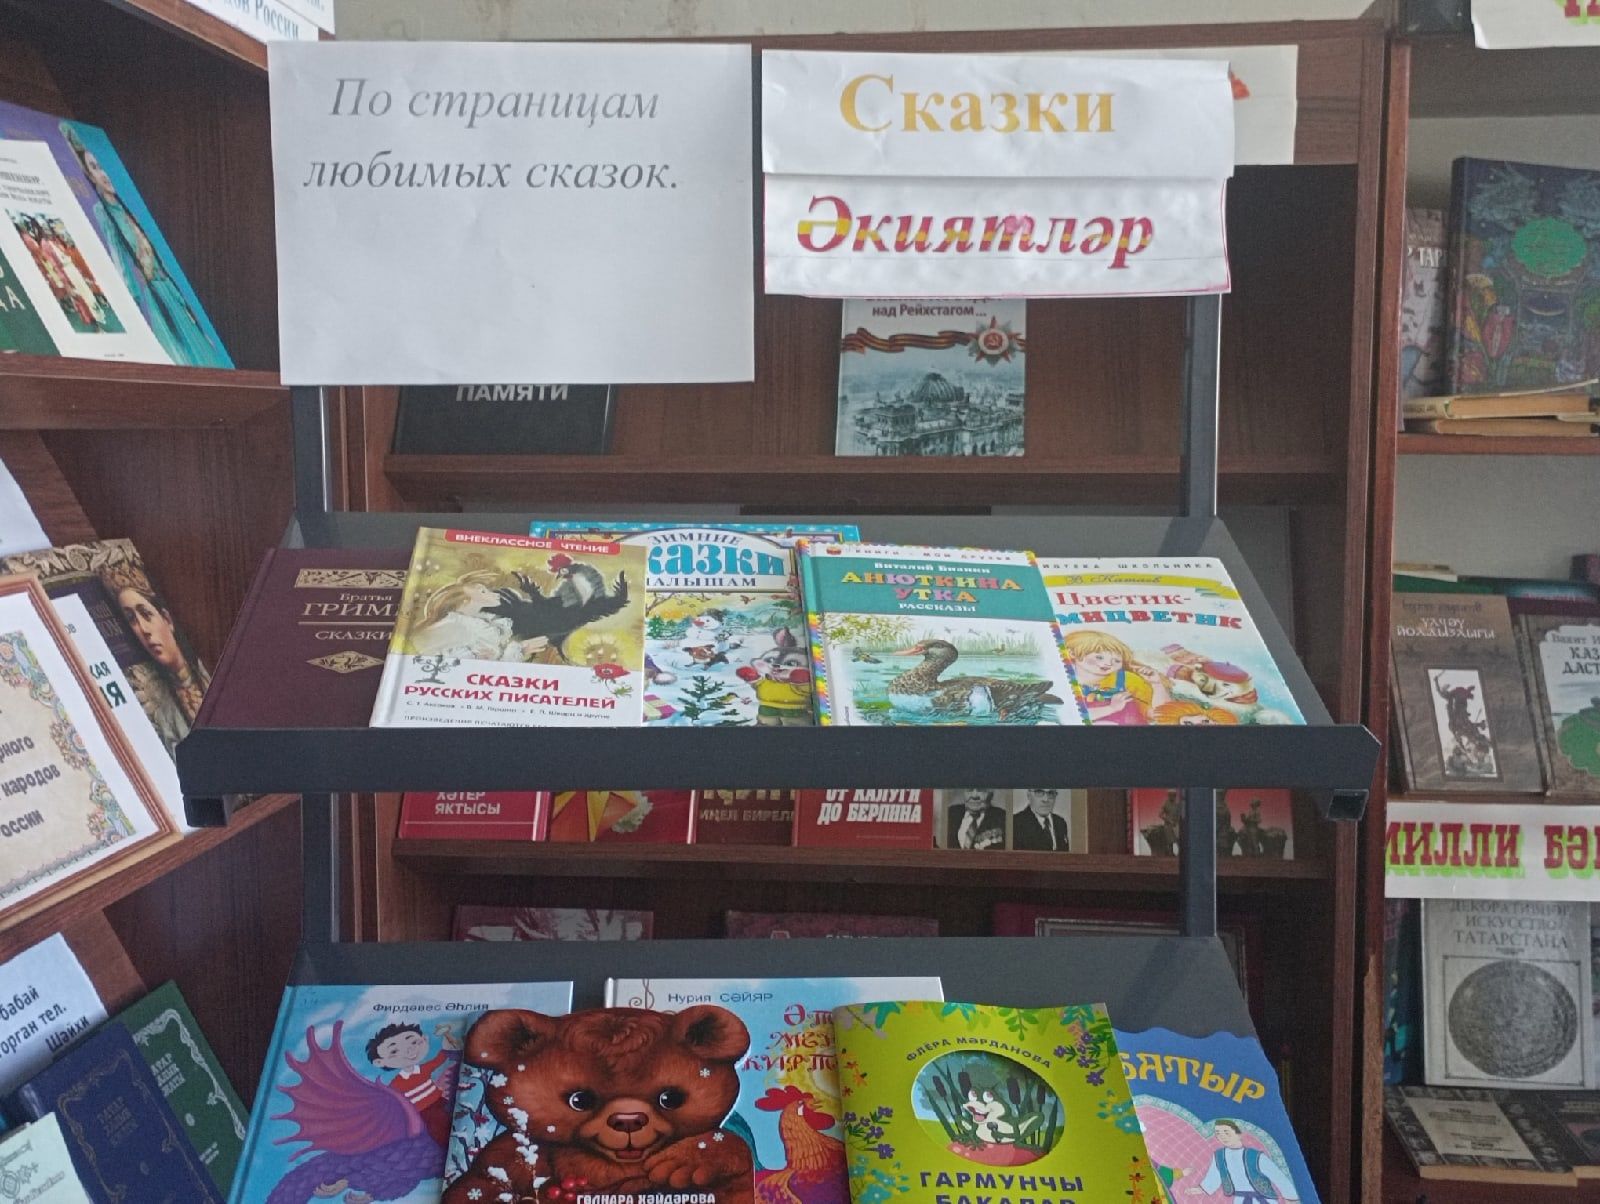 Дети чистопольского села отправились в путешествие по сказкам